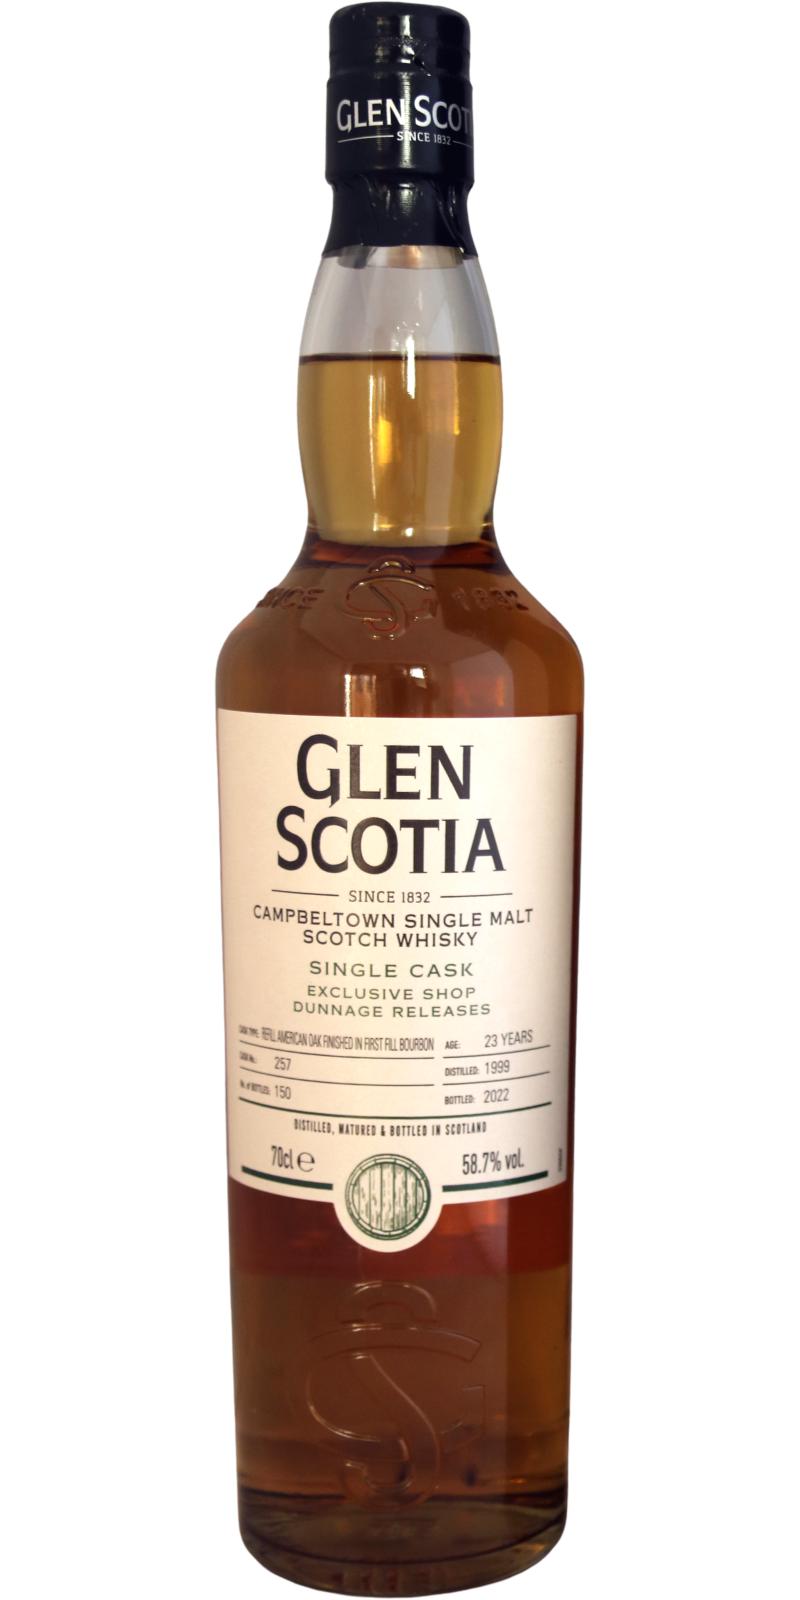 Glen Scotia 1999